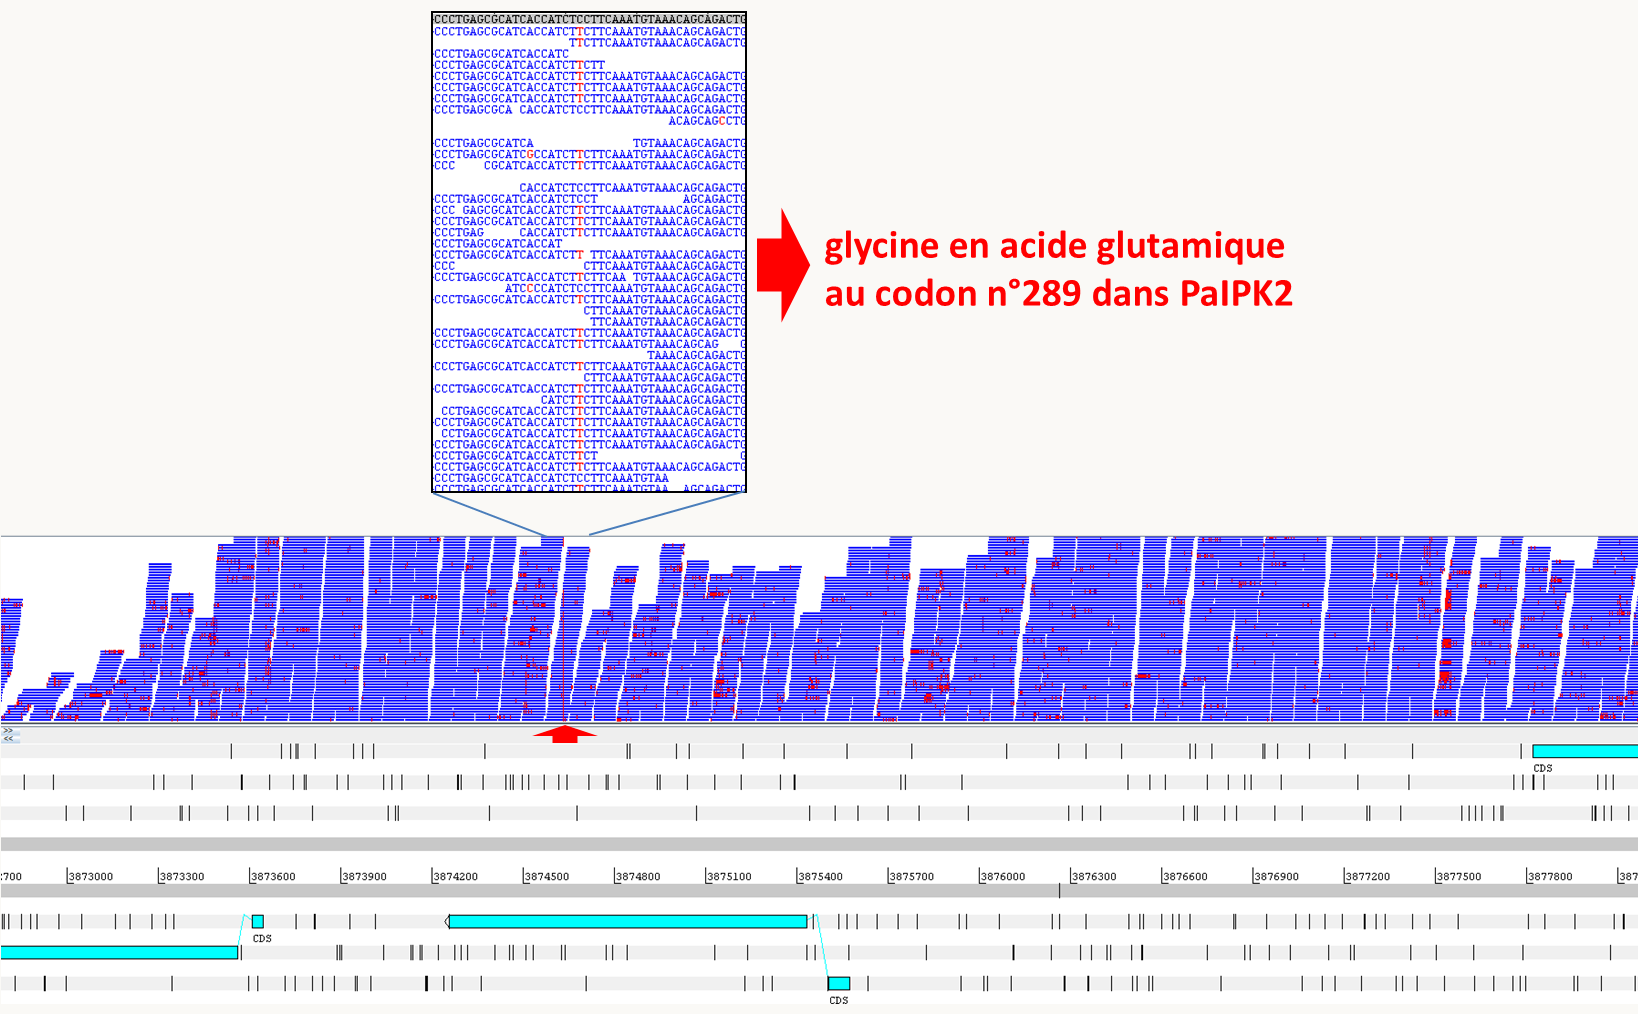 résultat d'un mapping des courtes séquences obtenues à partir du mutant spod1 via le séquençage à haut débit (traits bleus) sur la séquence de référence de la souche sauvage (en bas, les boites représentent les séquences codantes) chez Podospora anserina. Seule une courte région d'intérêt est montrée. Les différences entre les séquences du mutant et celle de la souche de référence sont en rouge. On voit la présence de nombreuses erreurs de séquence dispersées dans les différentes séquences obtenues par le séquençage à haut débit, ce qui est usuel avec les technologies actuelles. La position de la mutation (indiquée par la flèche rouge) est par contre bien visible sous la forme d'un trait rouge car la différence de séquence avec la souche sauvage est présente dans quasiment toutes les séquences. En haut, le détail des séquences autour de la mutation montre qu'il s'agit d'une transition de C vers T entraînant le changement au codon 289 d'une glycine par un acide glutamique dans un gène appelé PaIPK2 codant pour une inositol-polyphosphate kinase.